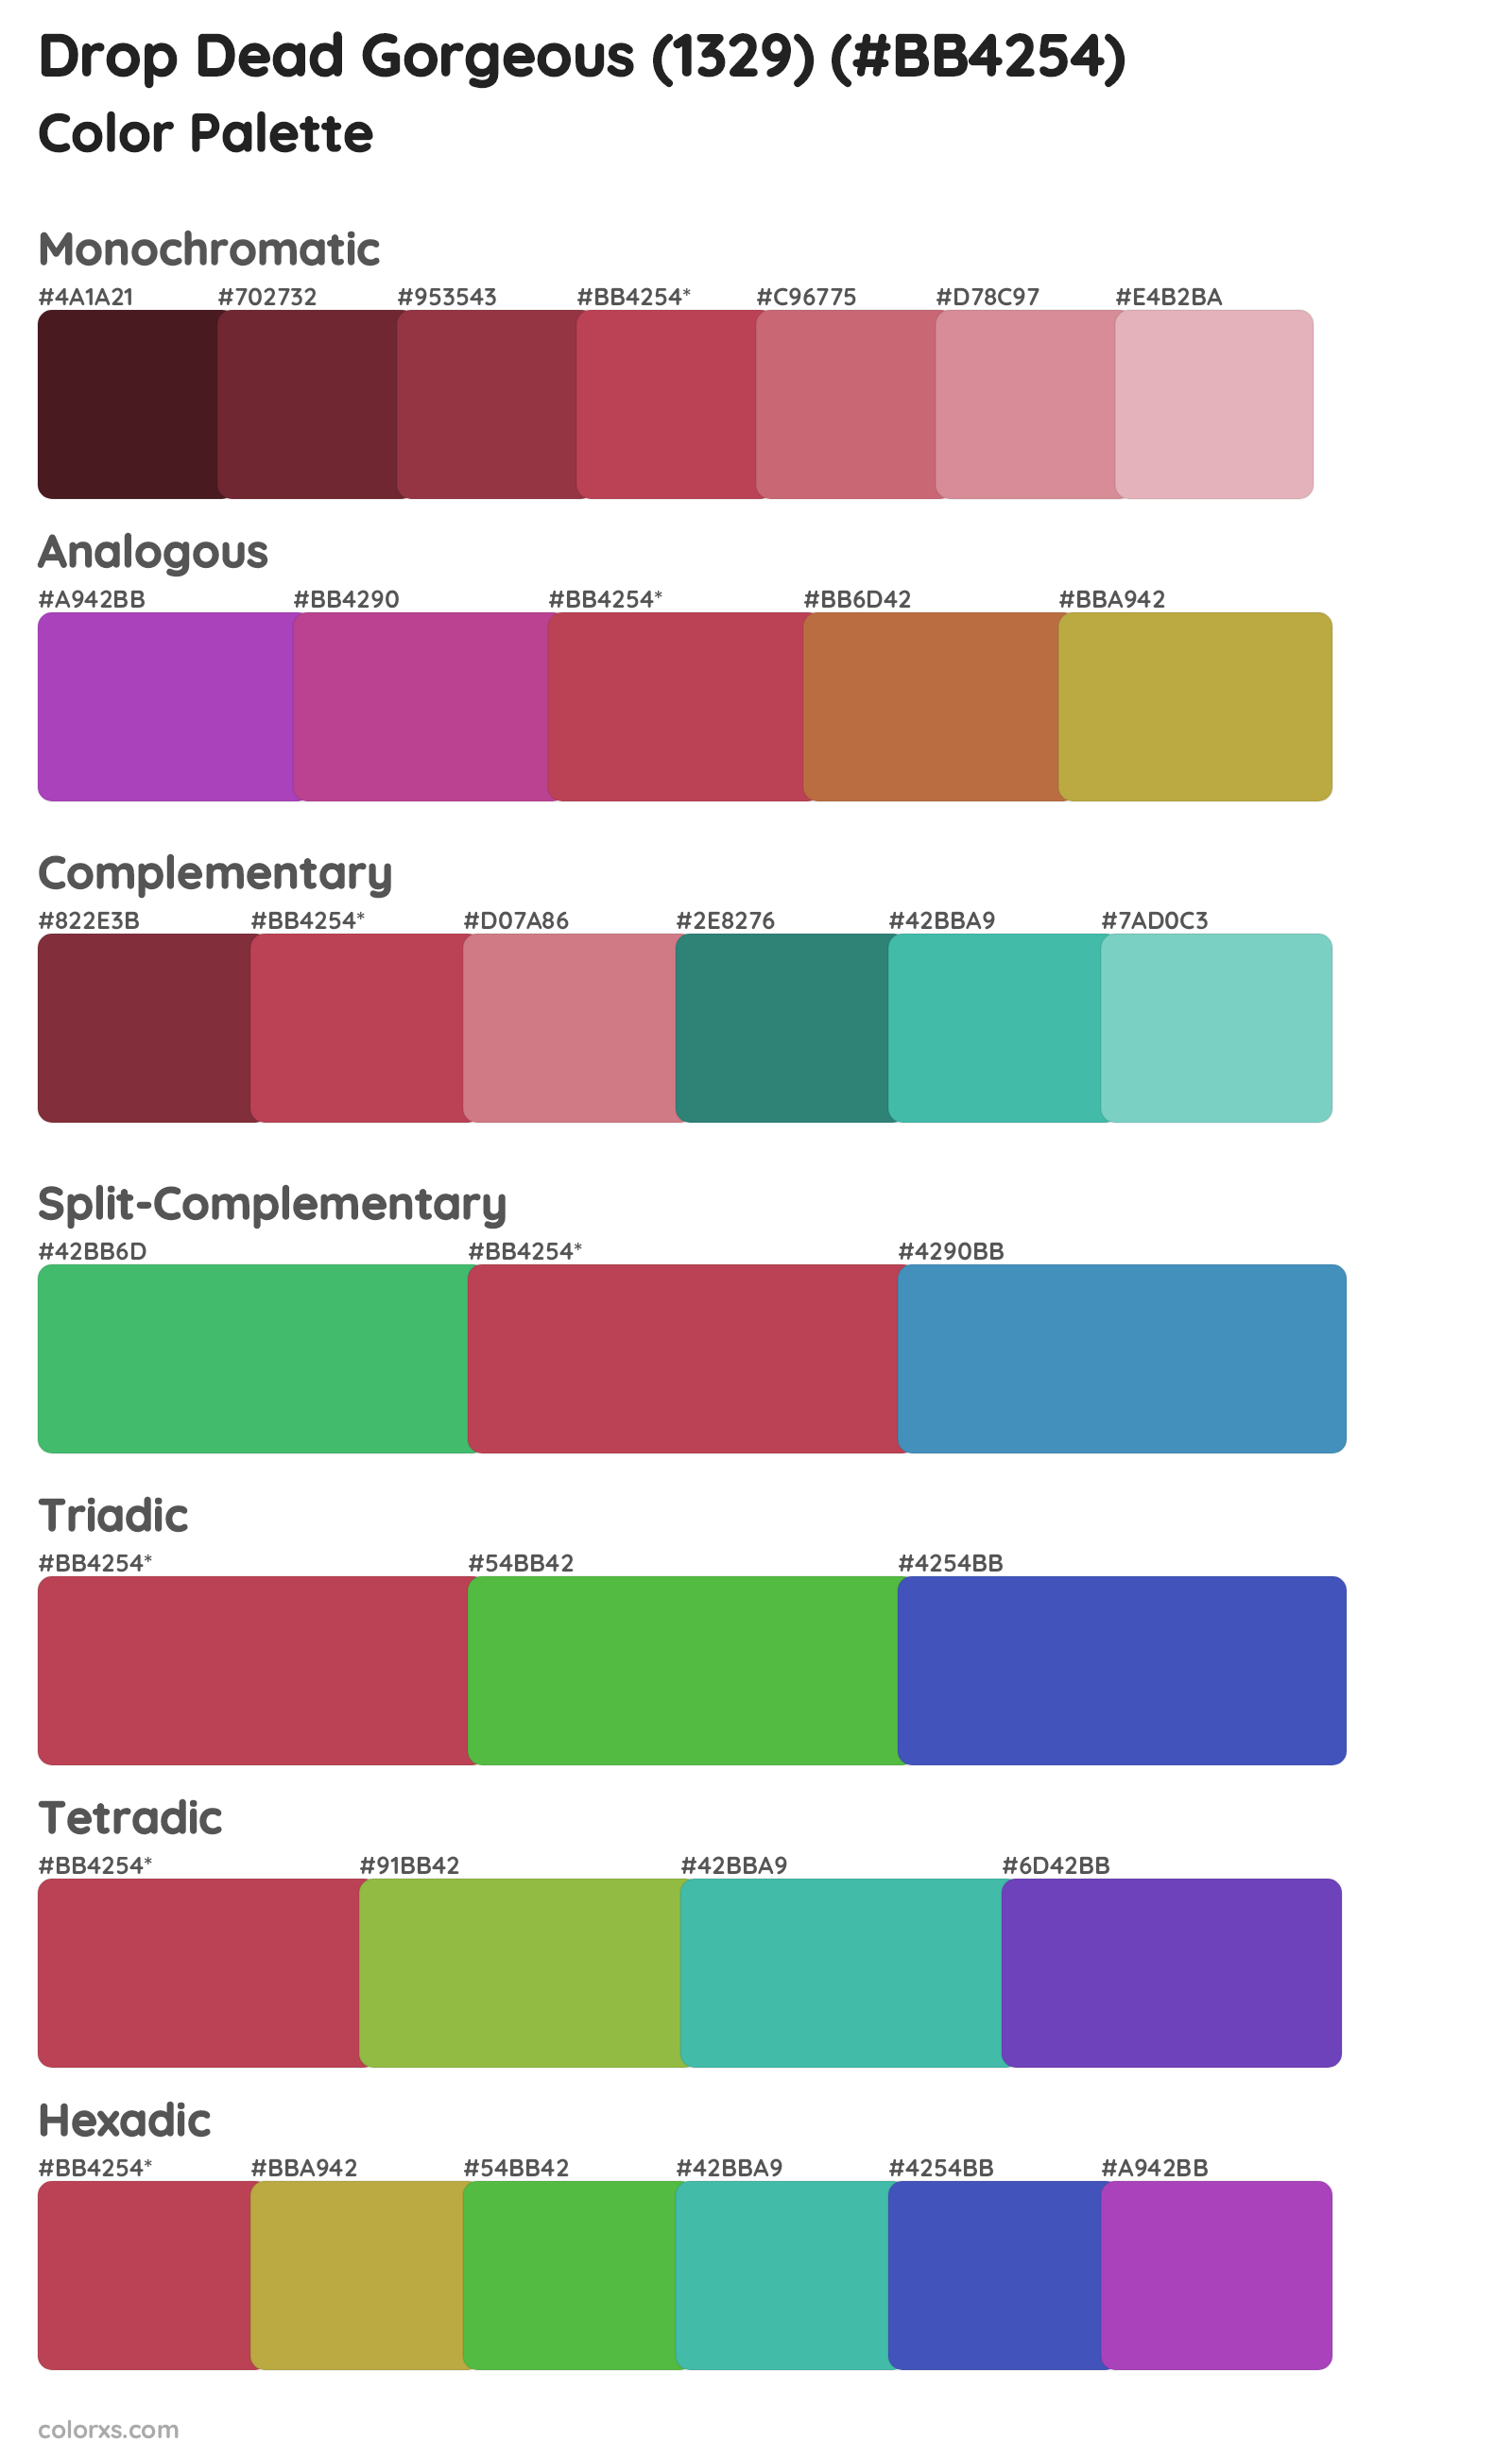 Drop Dead Gorgeous (1329) Color Scheme Palettes